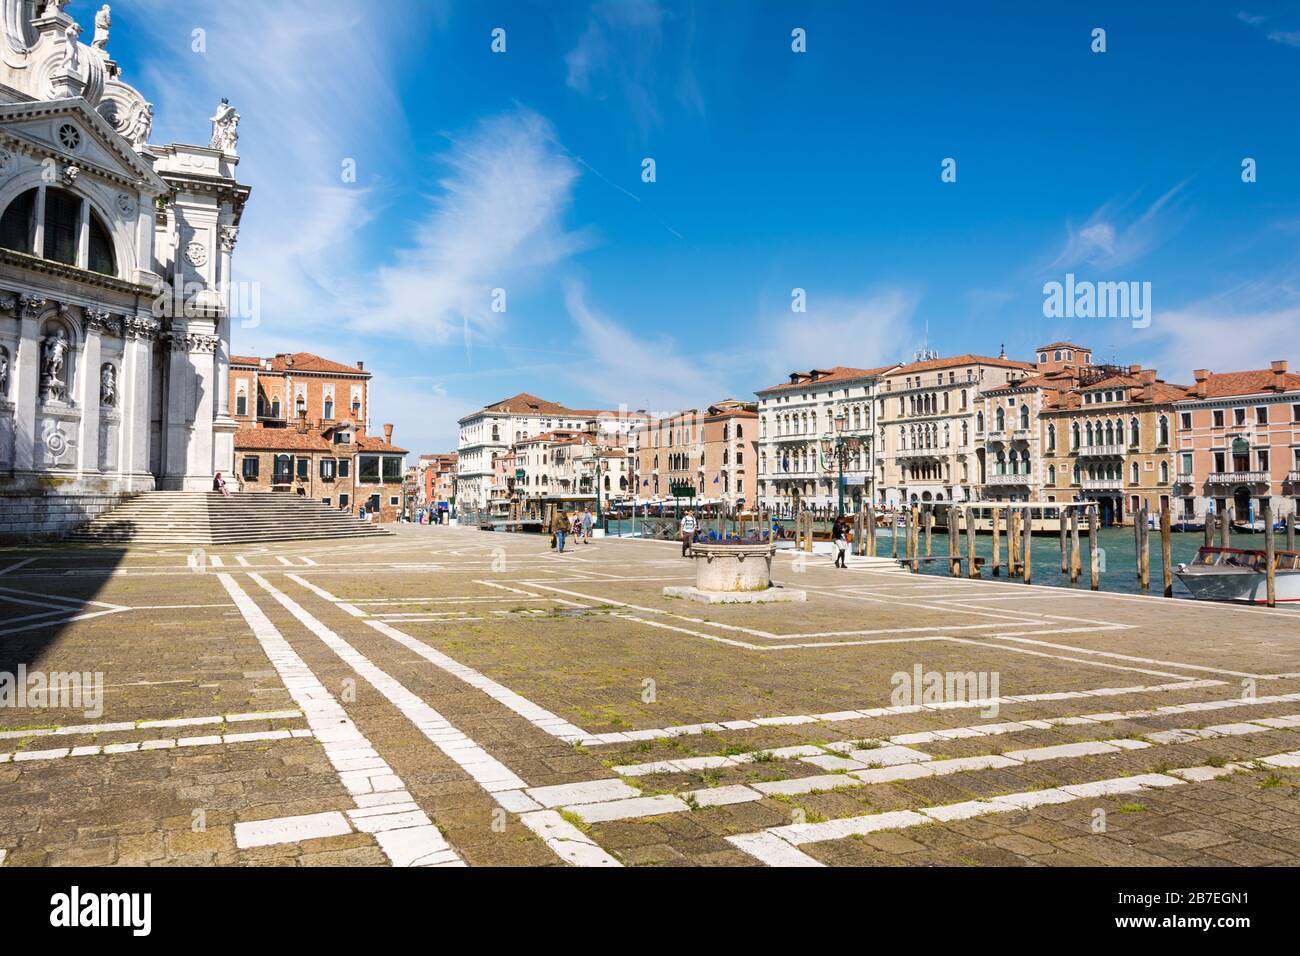 Venise, Italie - 17 MAI 2019 : vue sur la basilique Santa Maria della Salute à Venise Banque D'Images